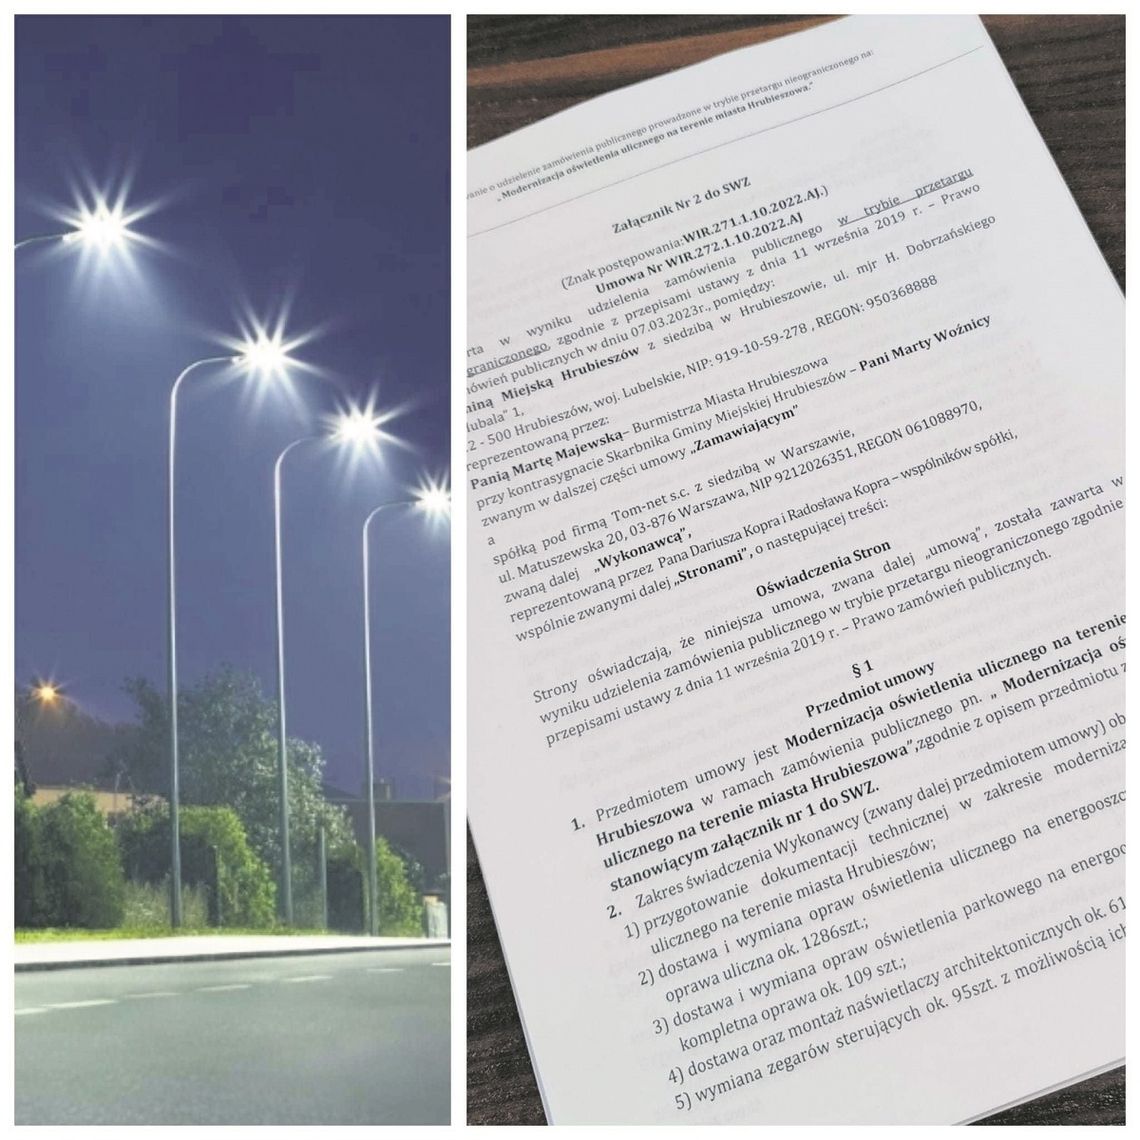 Na początku marca burmistrz Hrubieszowa zawarła umowę z firmą, która podejmie się modernizacji ulicznego oświetlenia w mieście.